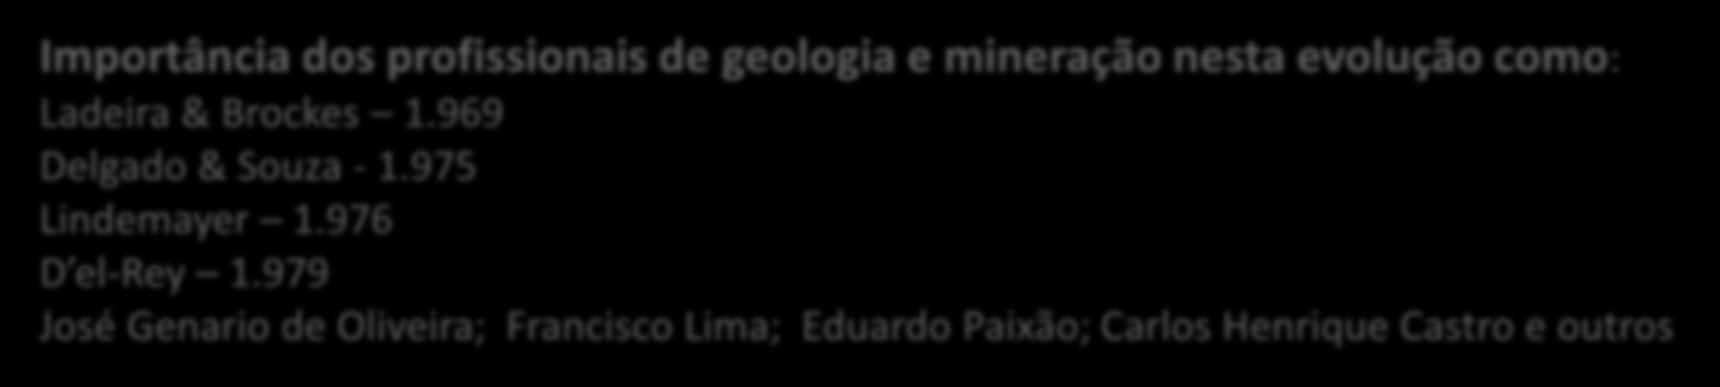 3. Evolução do Conhecimento Geológico Importância dos profissionais de geologia e mineração nesta evolução como: Ladeira & Brockes 1.969 Delgado & Souza - 1.975 Lindemayer 1.976 D el-rey 1.